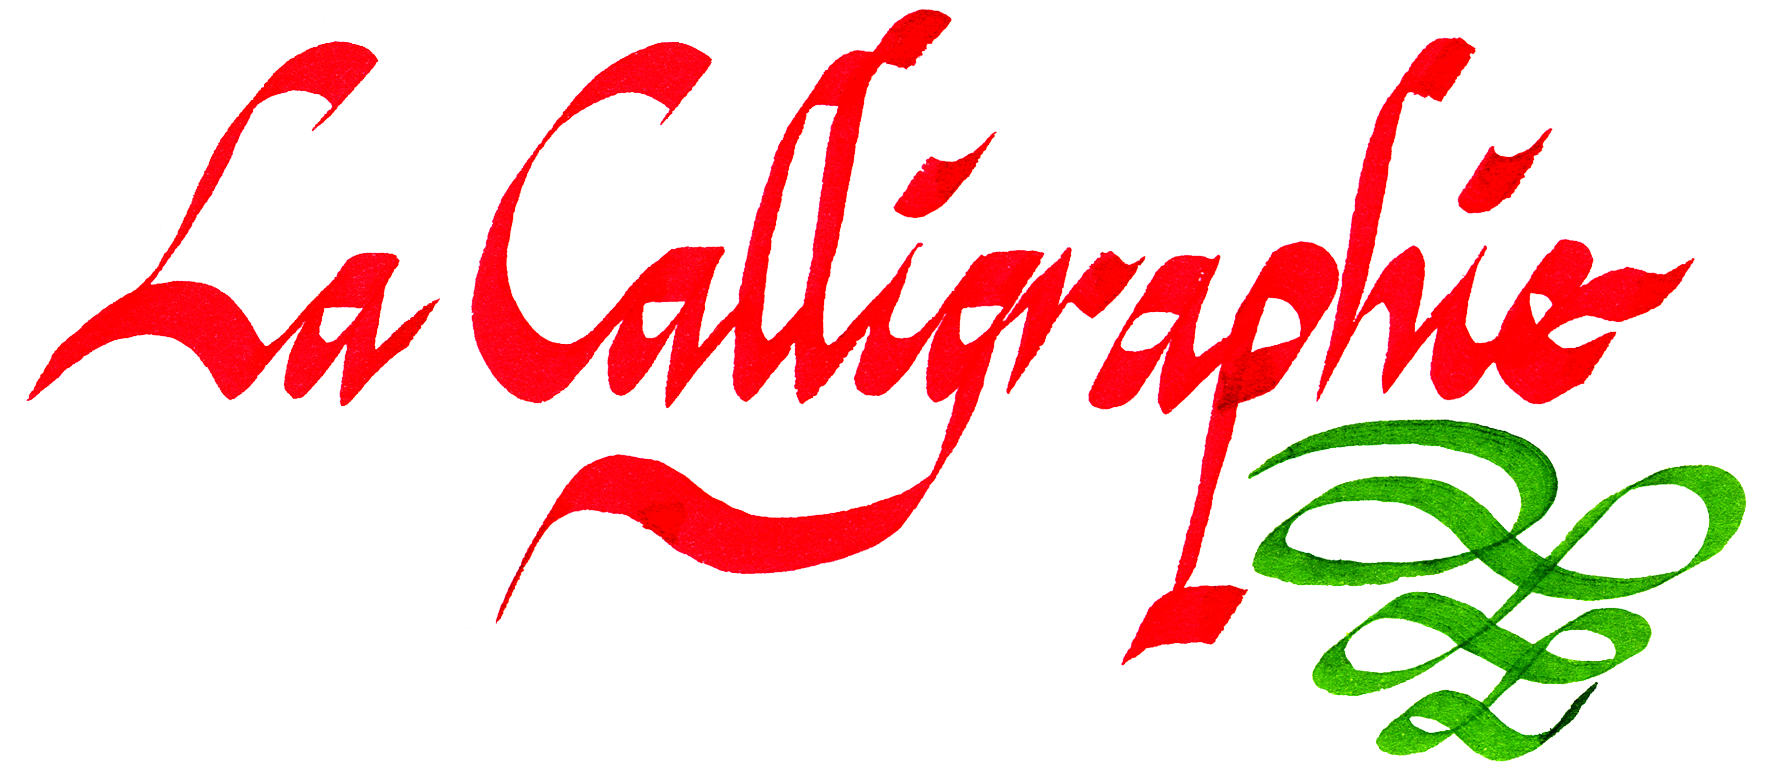 calligraphie italique